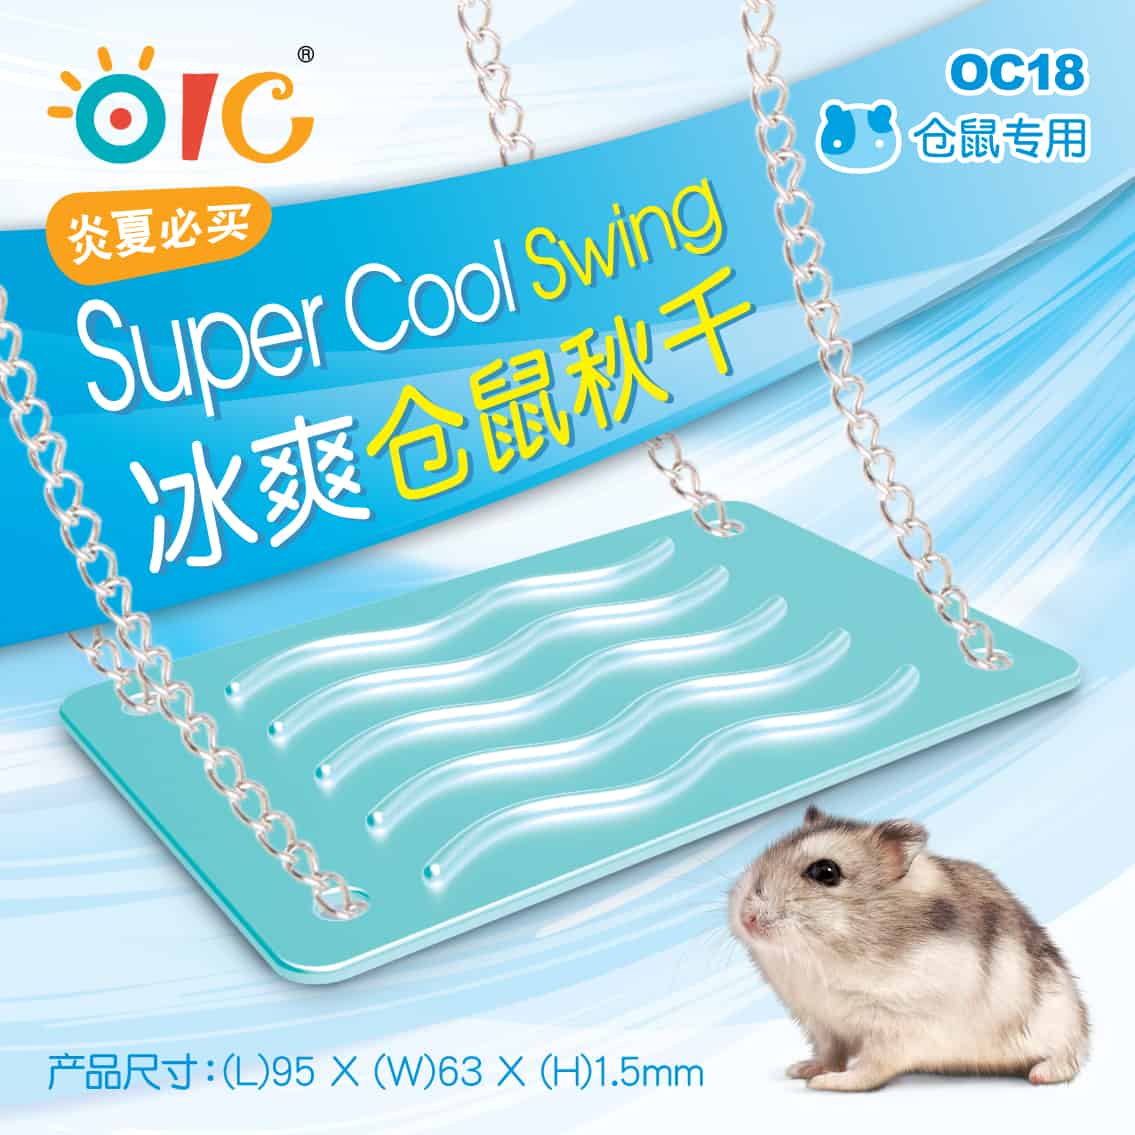 OIC OC18 Super Cool Swing